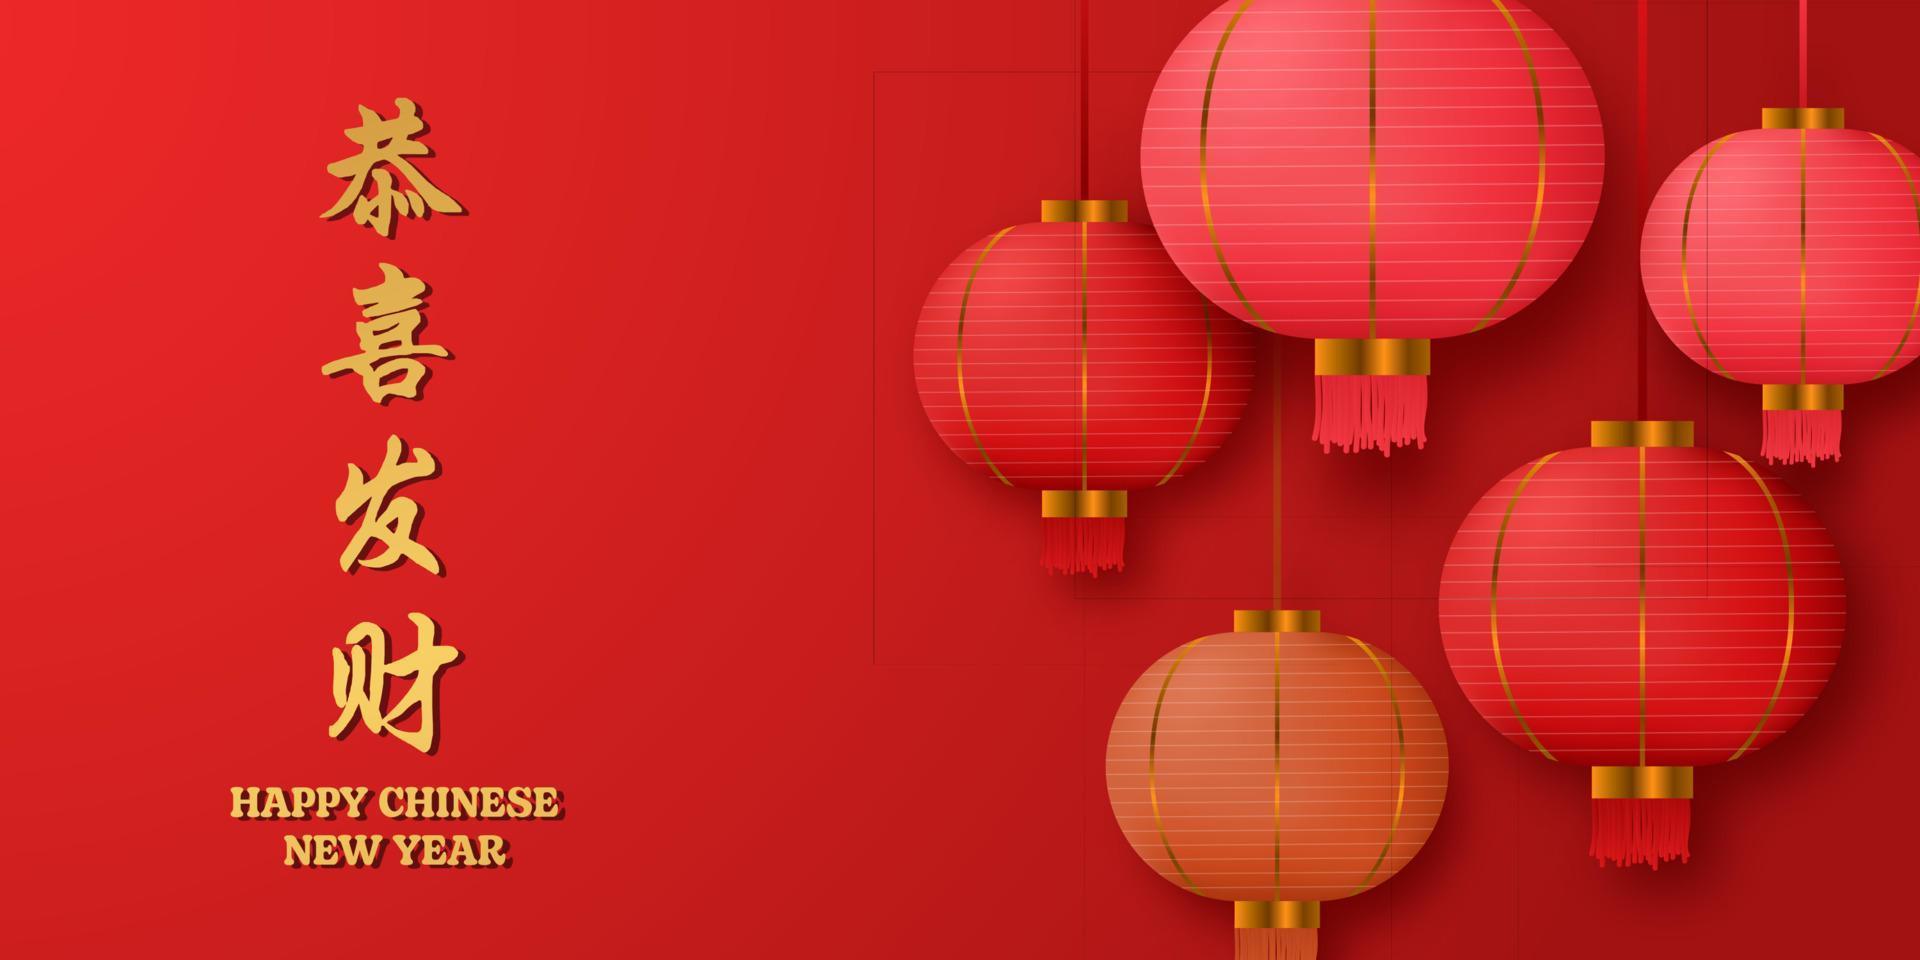 decoração asiática tradicional da lanterna 3d de suspensão vermelha. decorações para o ano novo chinês. cartaz do festival da lanterna chinesa, banner, cartão comemorativo vetor